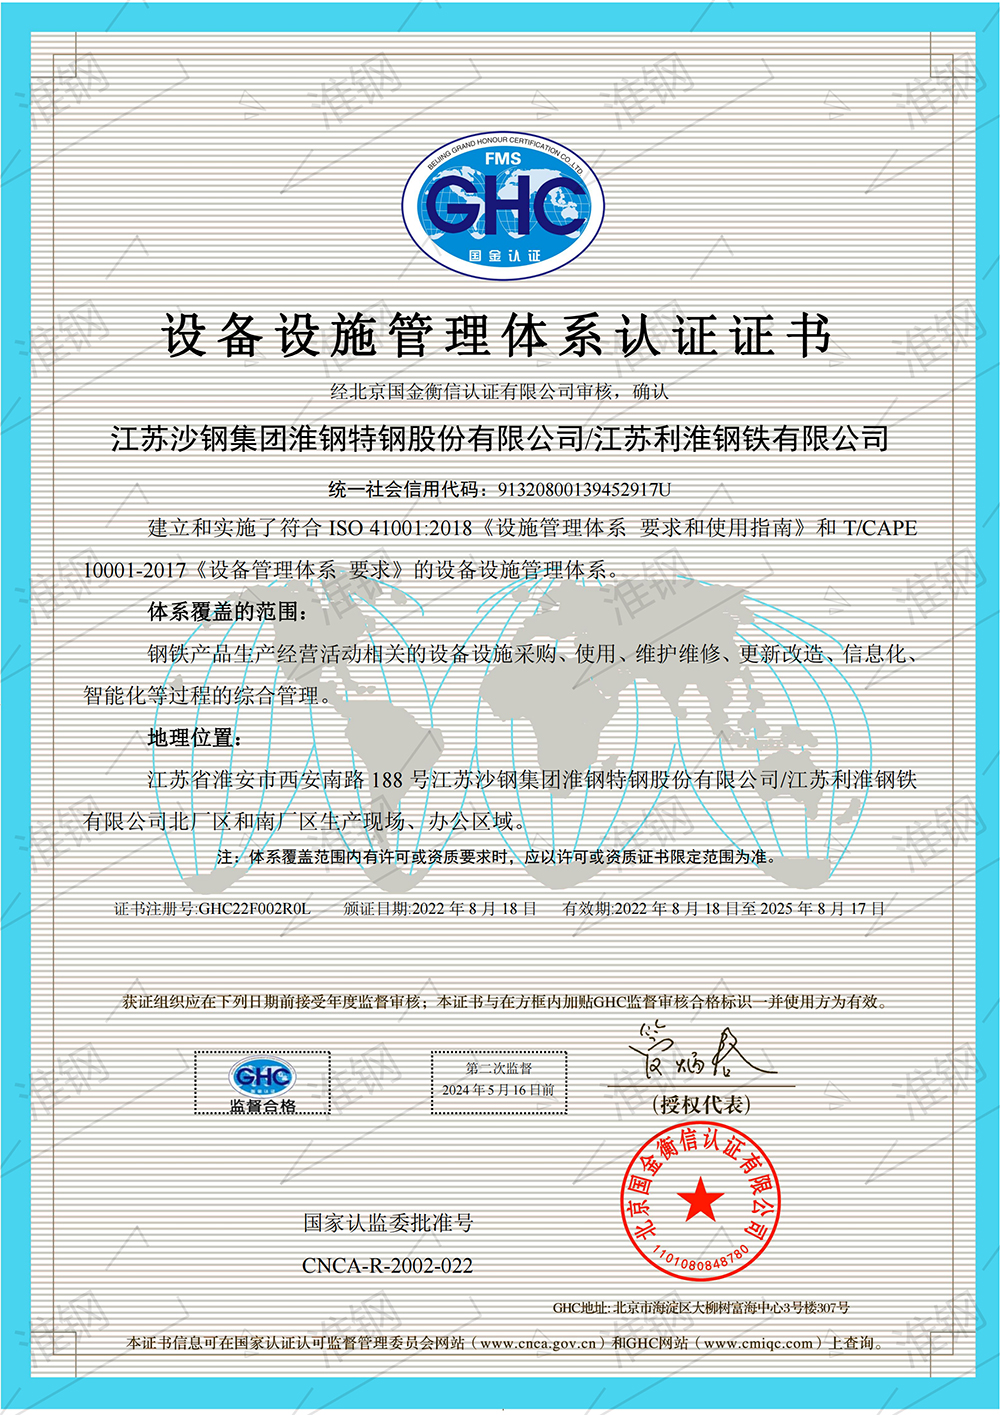 设备设施管理体系认证证书